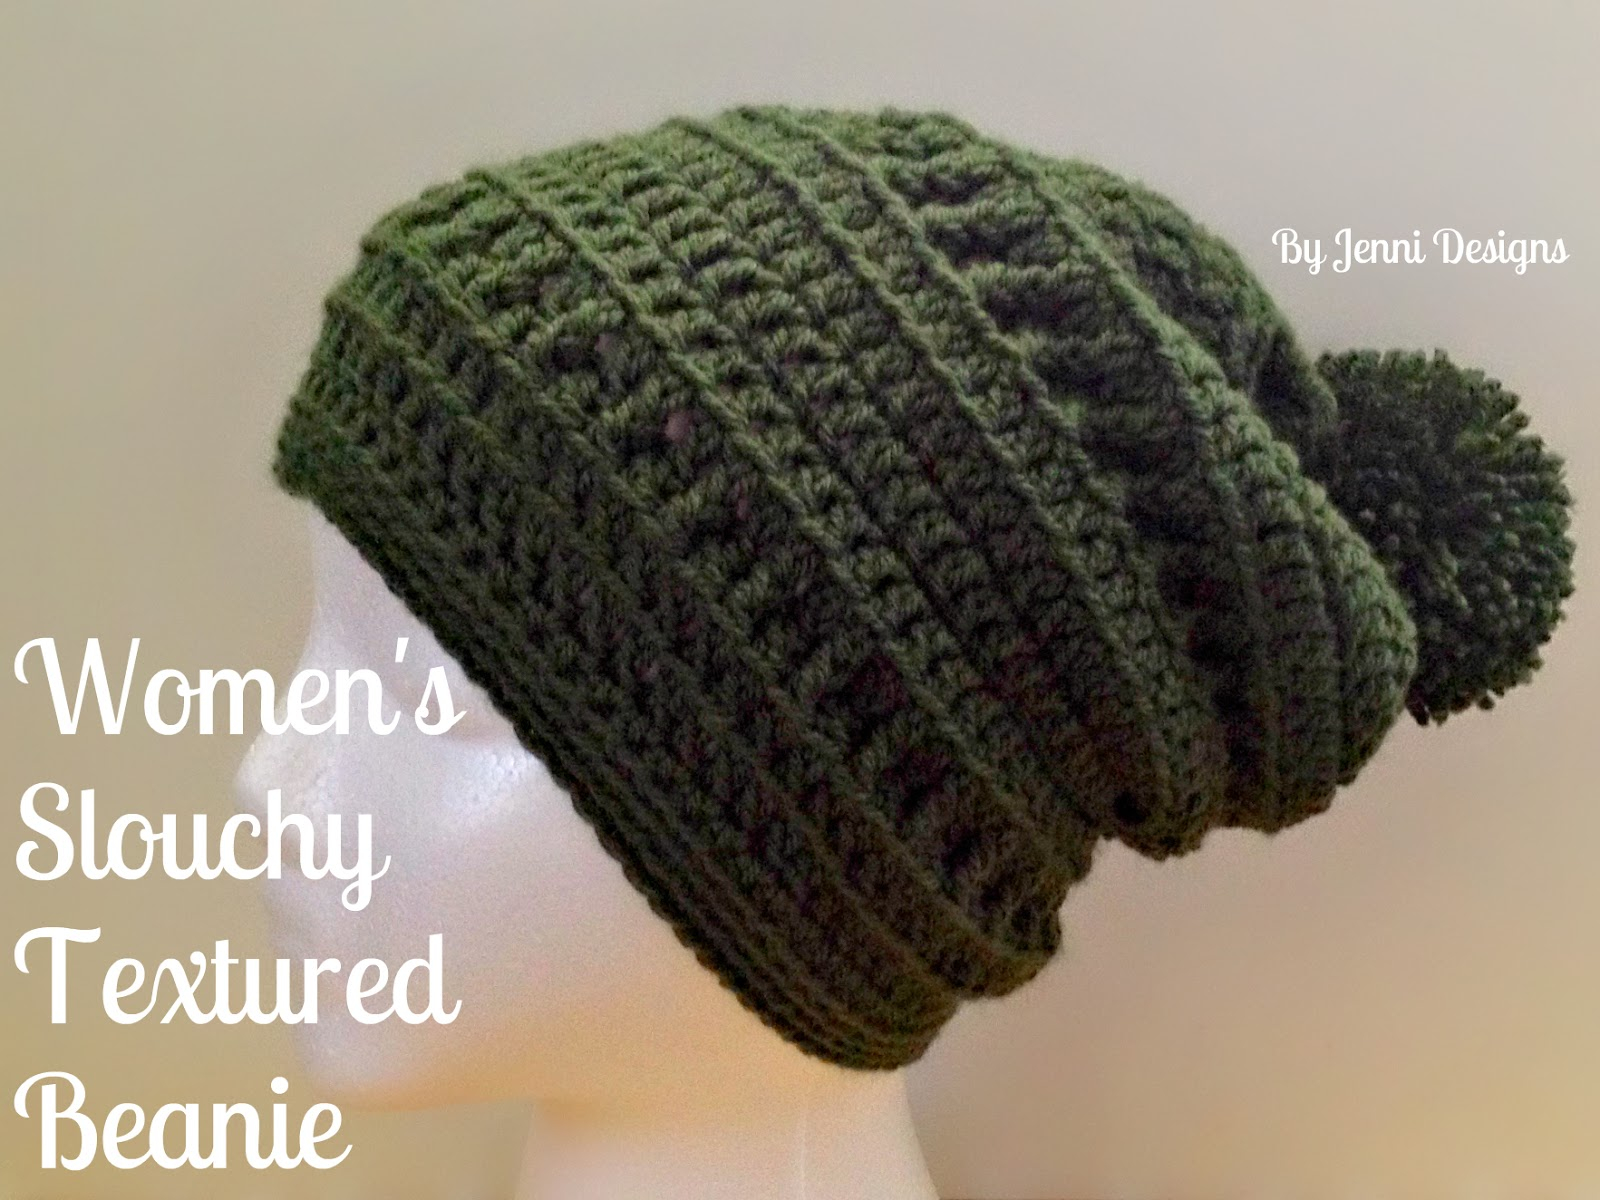 Easy Crochet Slouchy Hat Pattern Jenni Designs Free Crochet Pattern Womens Slouchy Textured Beanie